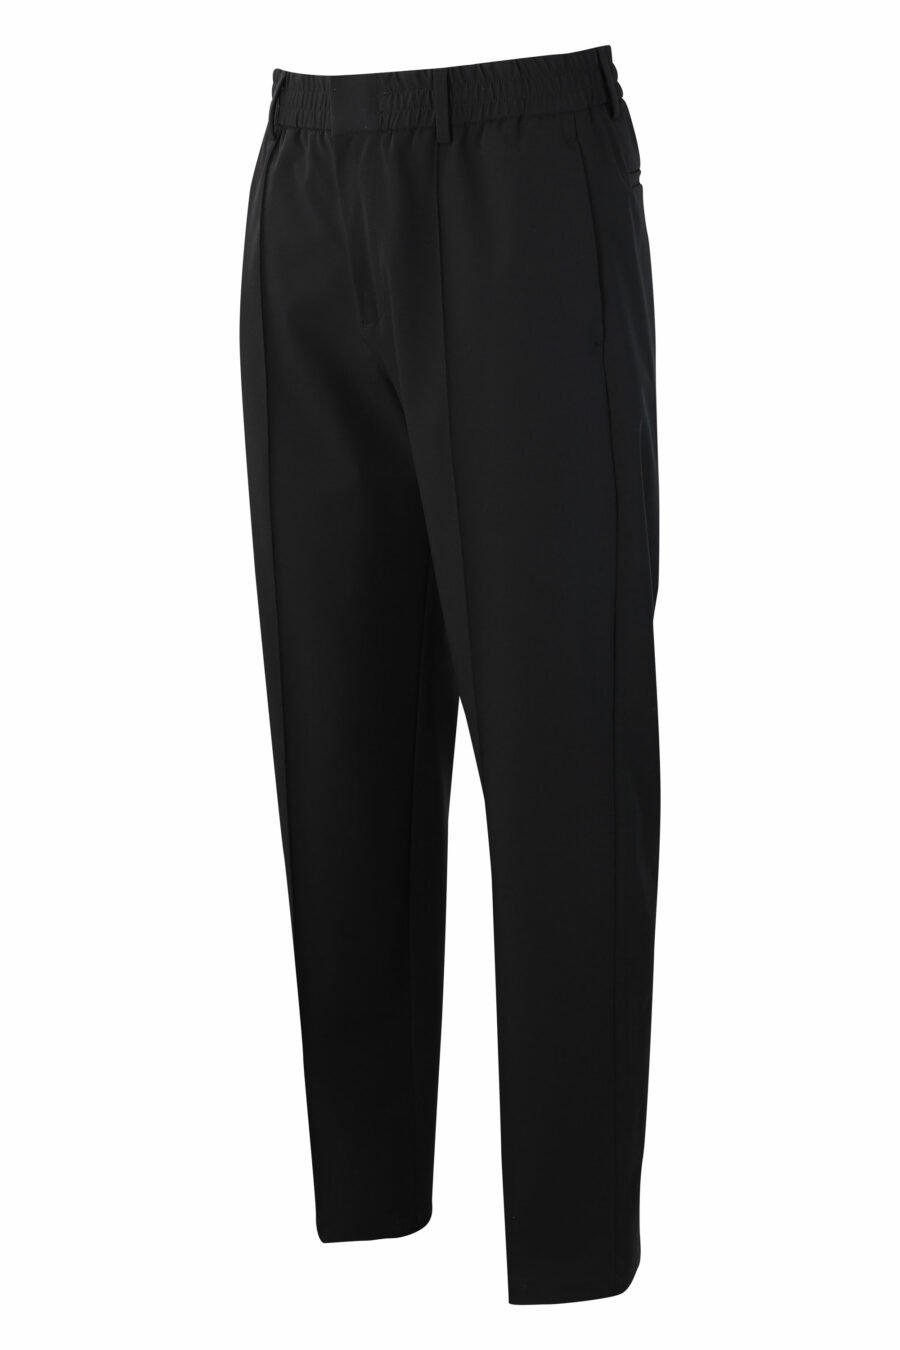 Pantalón negro con minilogo - IMG 9926 1